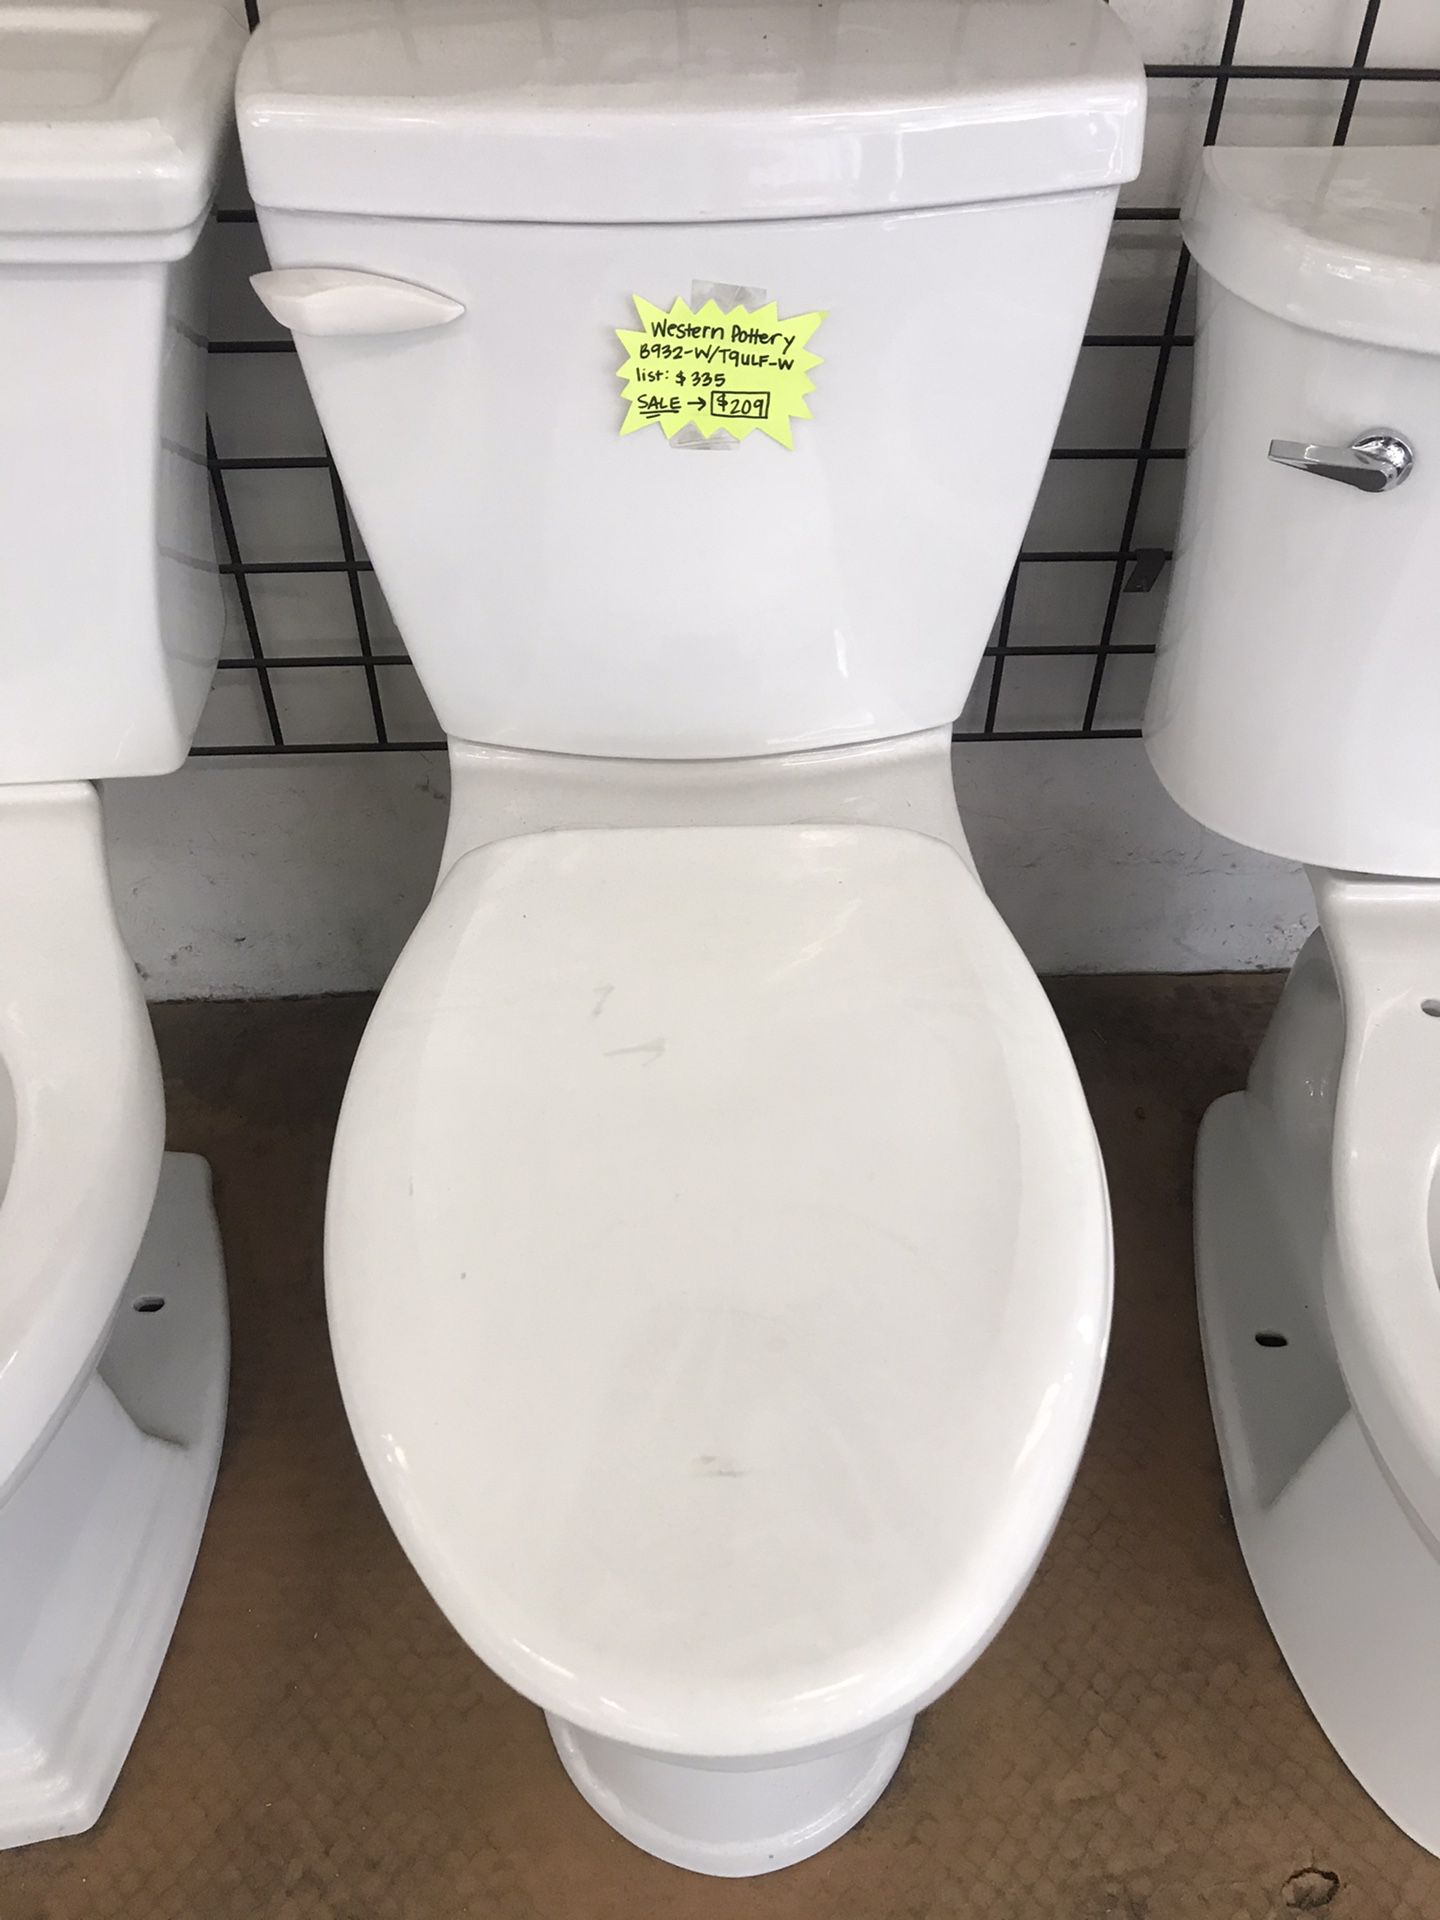 Western Pottery White Toilet